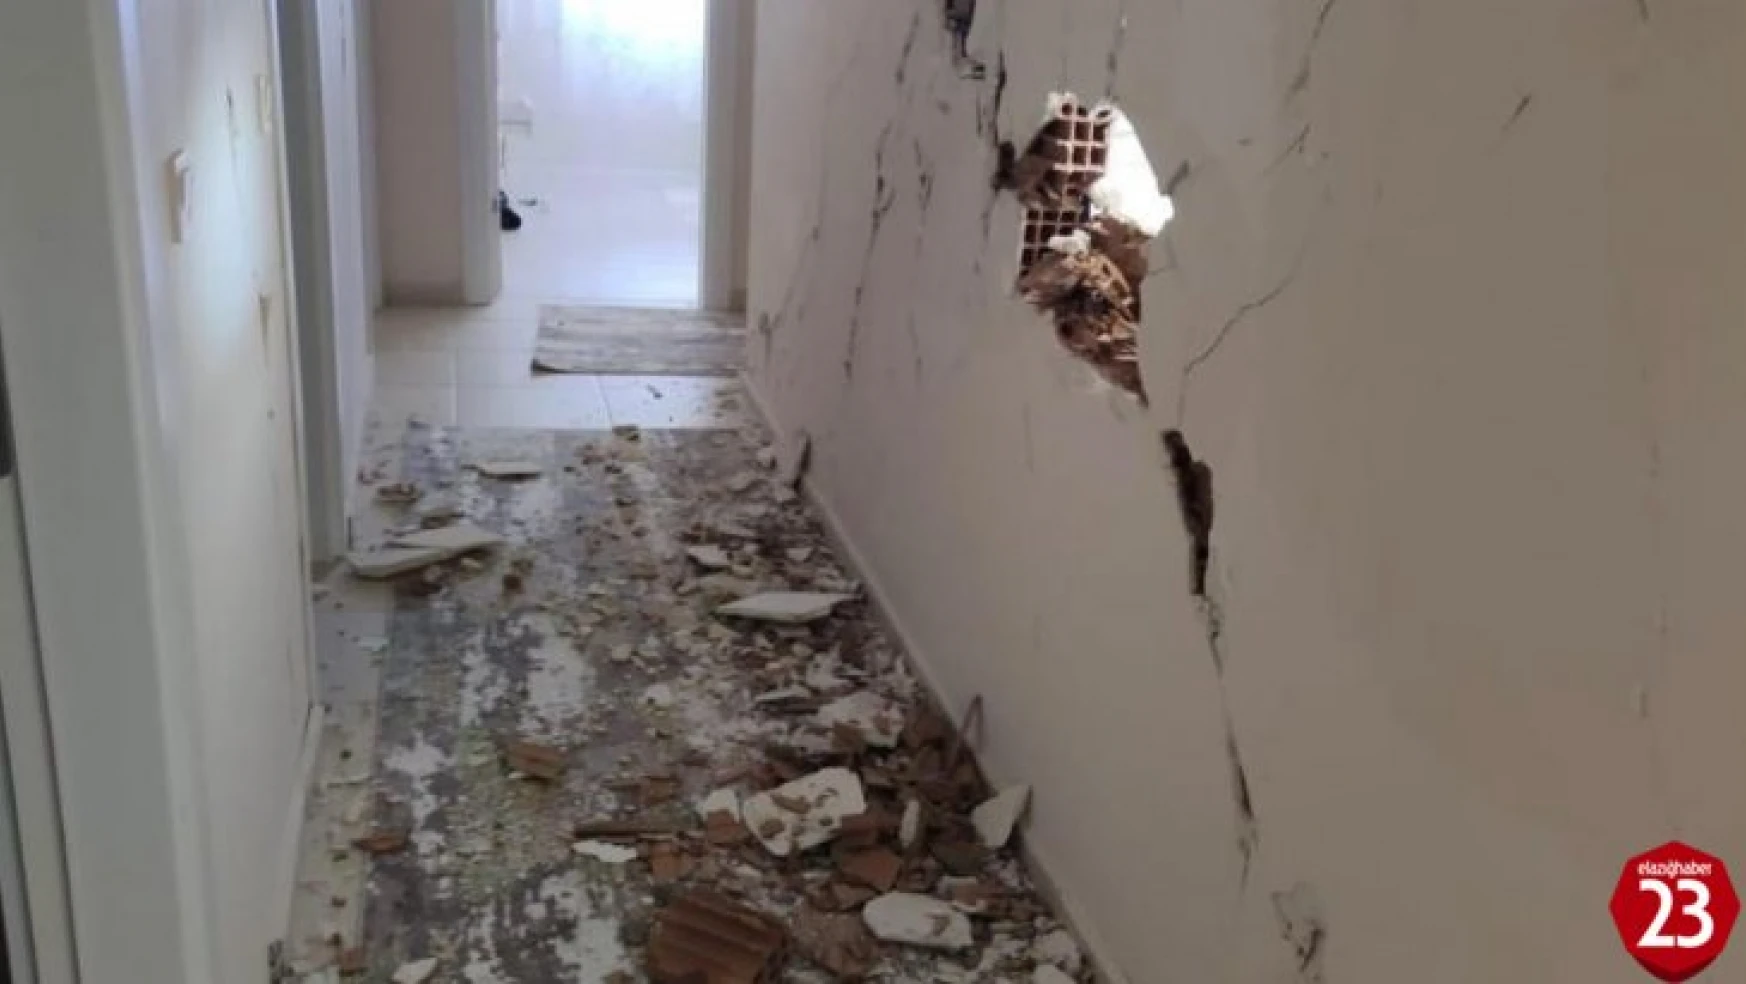 Elazığ'daki 5.3'lük depremin kesin hasar tespit çalışmaları tamamlandı